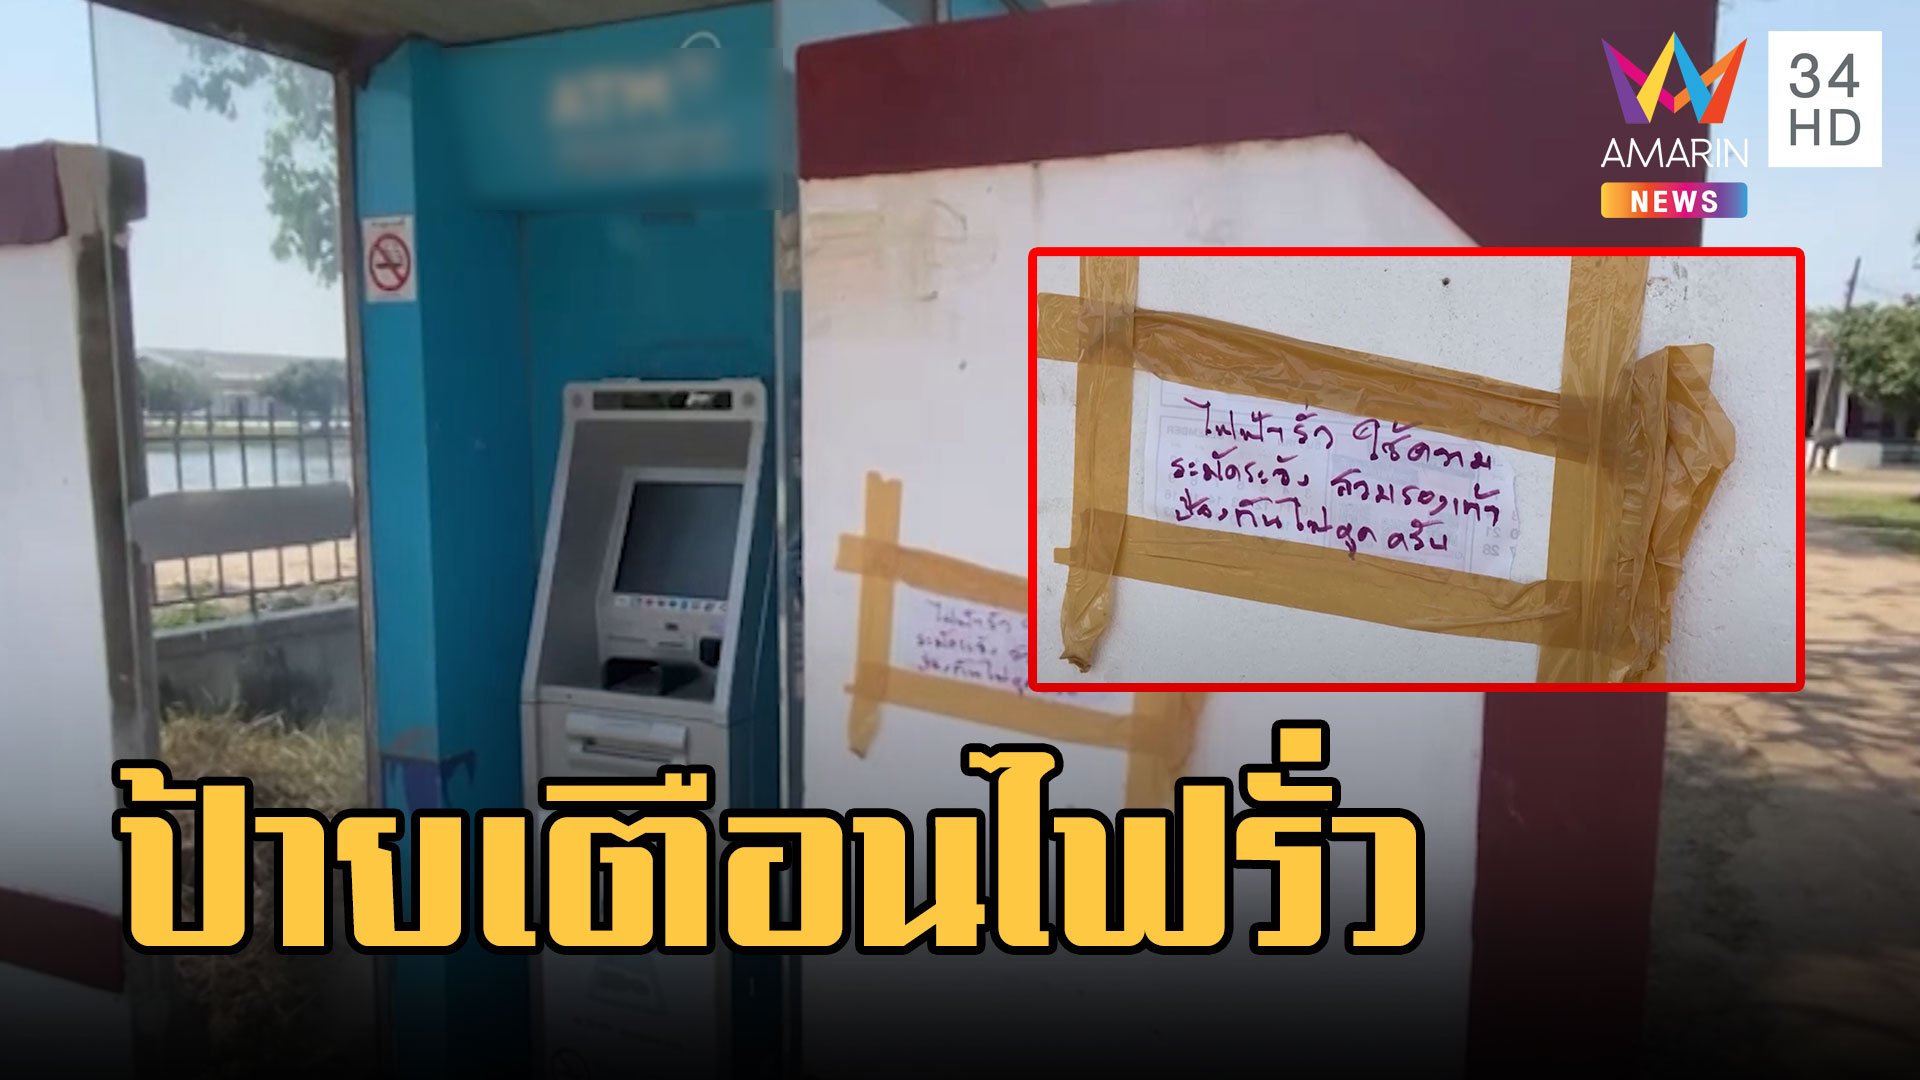 ไม่กล้ากด! เตือนตู้ ATM ไฟฟ้ารั่ว ชาวบ้านติดป้ายเตือนกันเอง | ข่าวอรุณอมรินทร์ | 21 ก.พ. 66 | AMARIN TVHD34